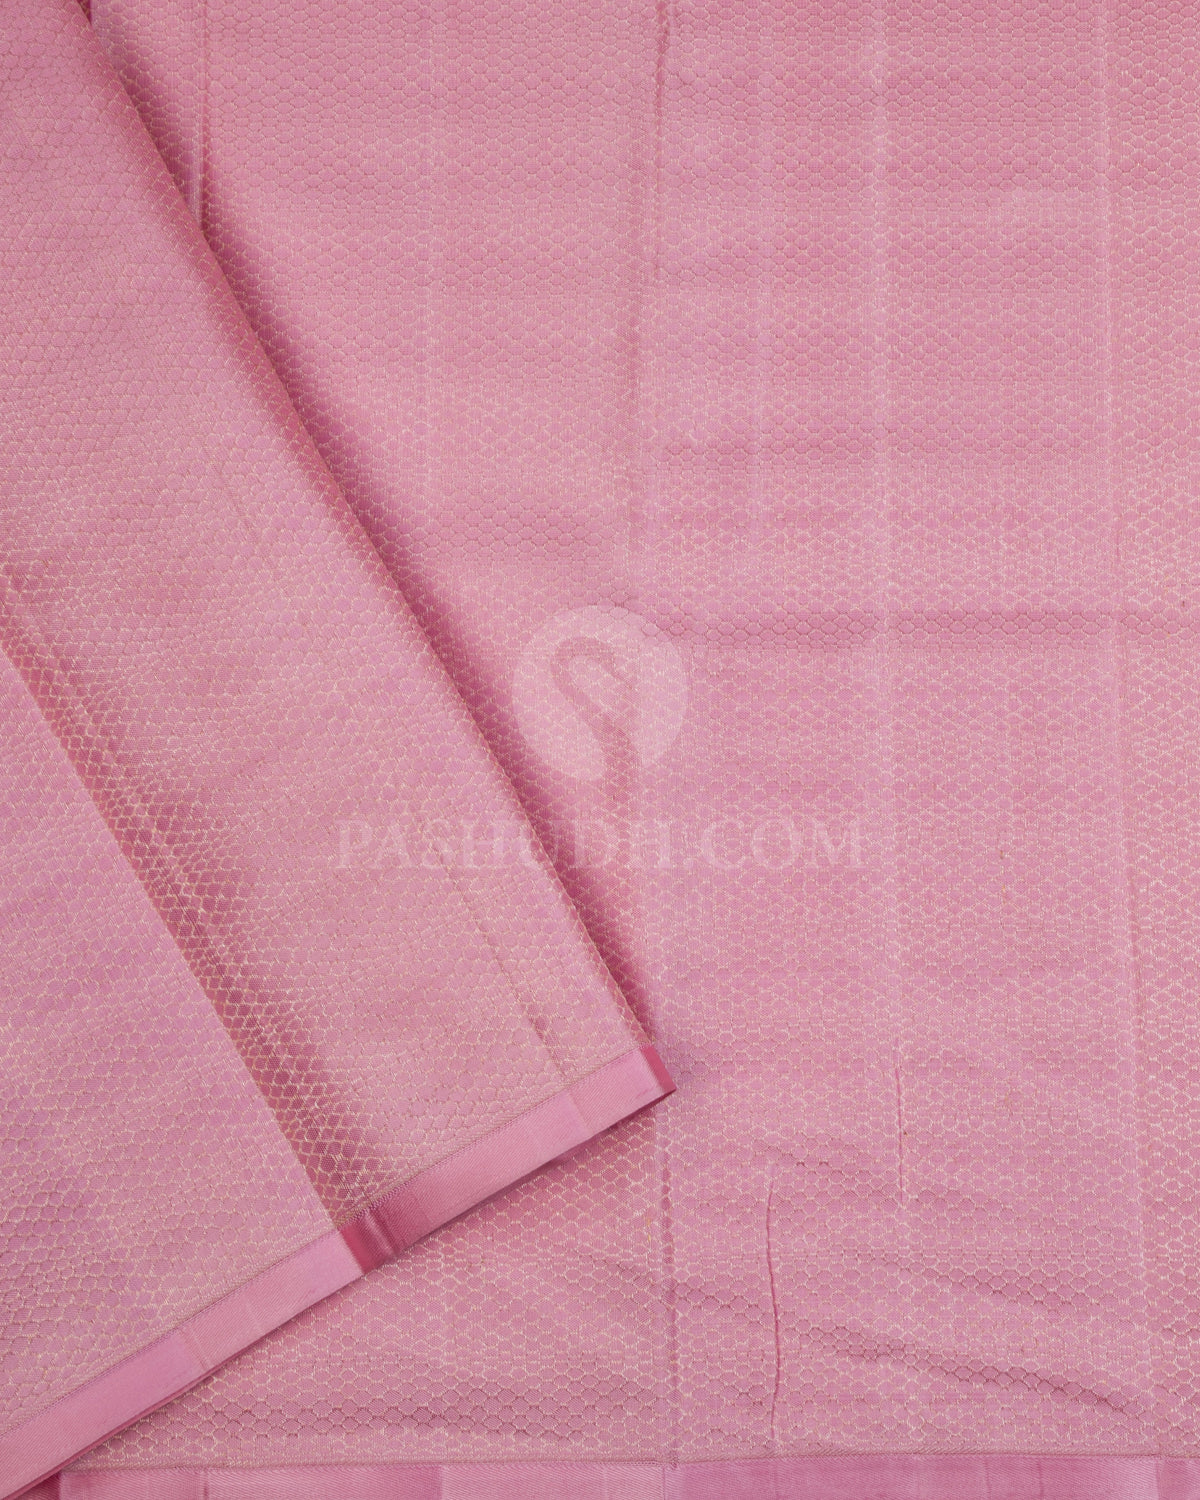 Heather Purple & Baby Pink Kanjivaram Silk Saree - S1061(A) - View 3